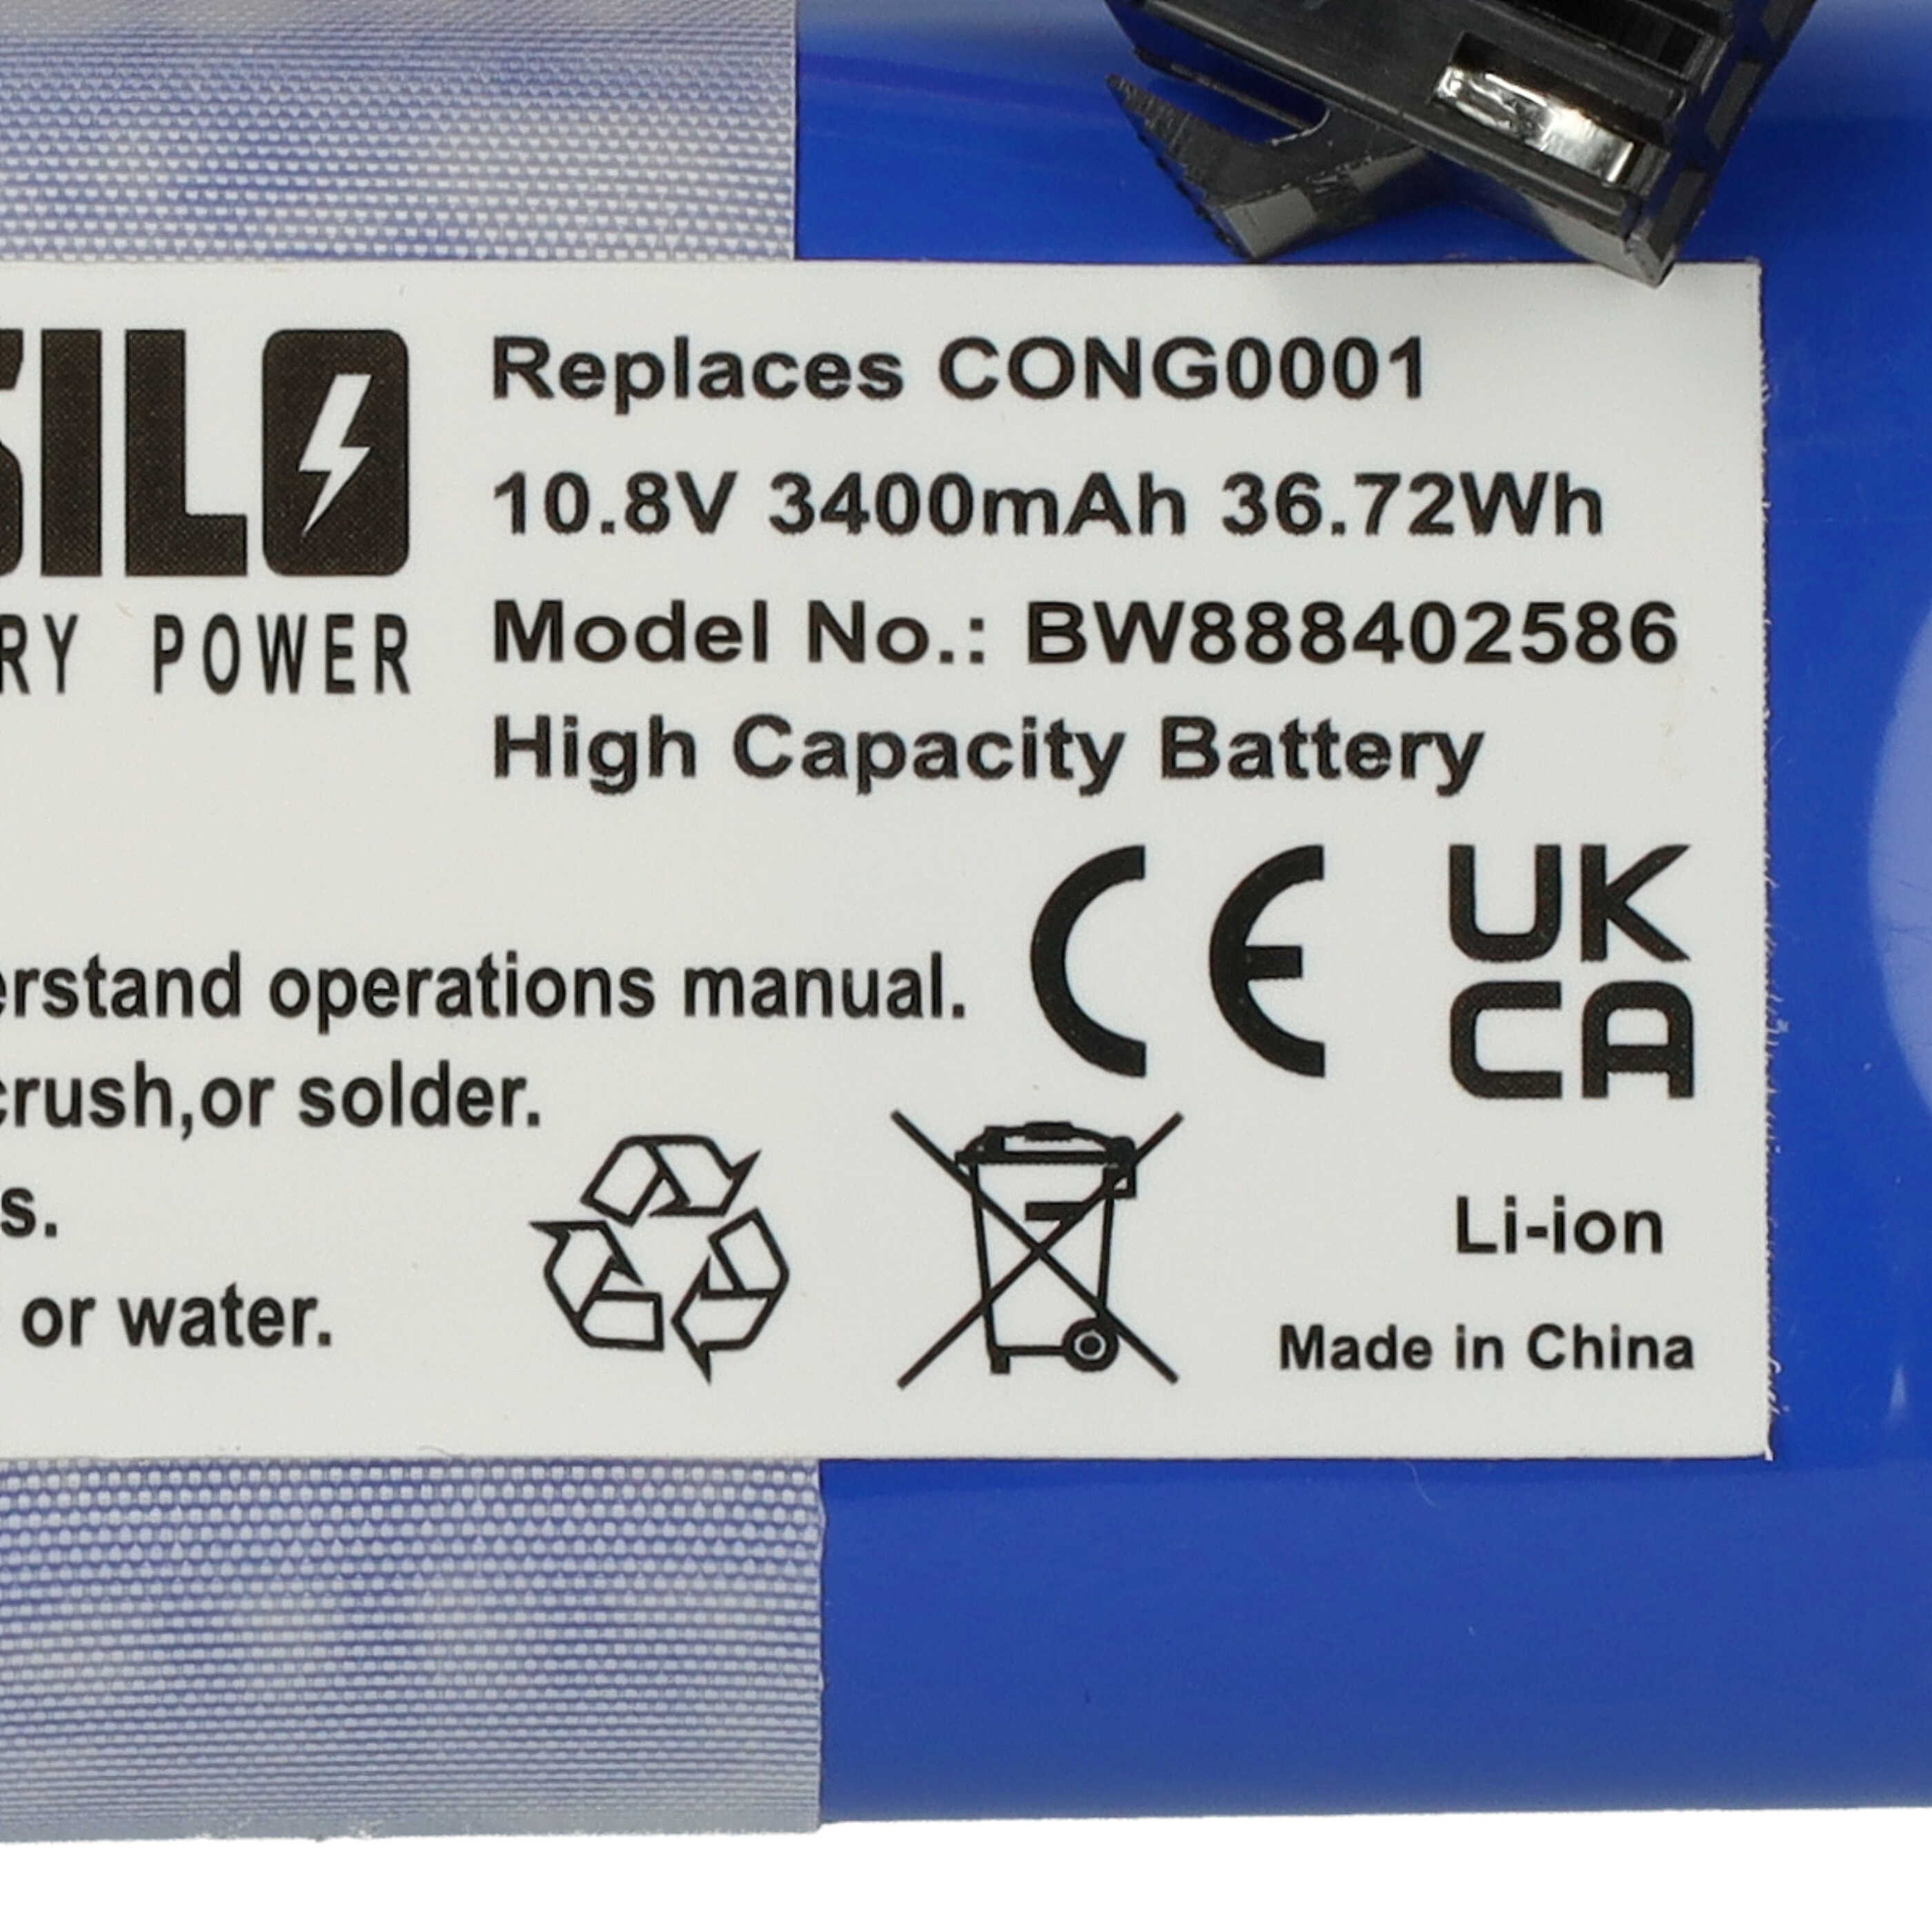 Batería reemplaza Cecotec CONG0001 para robot doméstico Cecotec - 3400 mAh 10,8 V Li-Ion